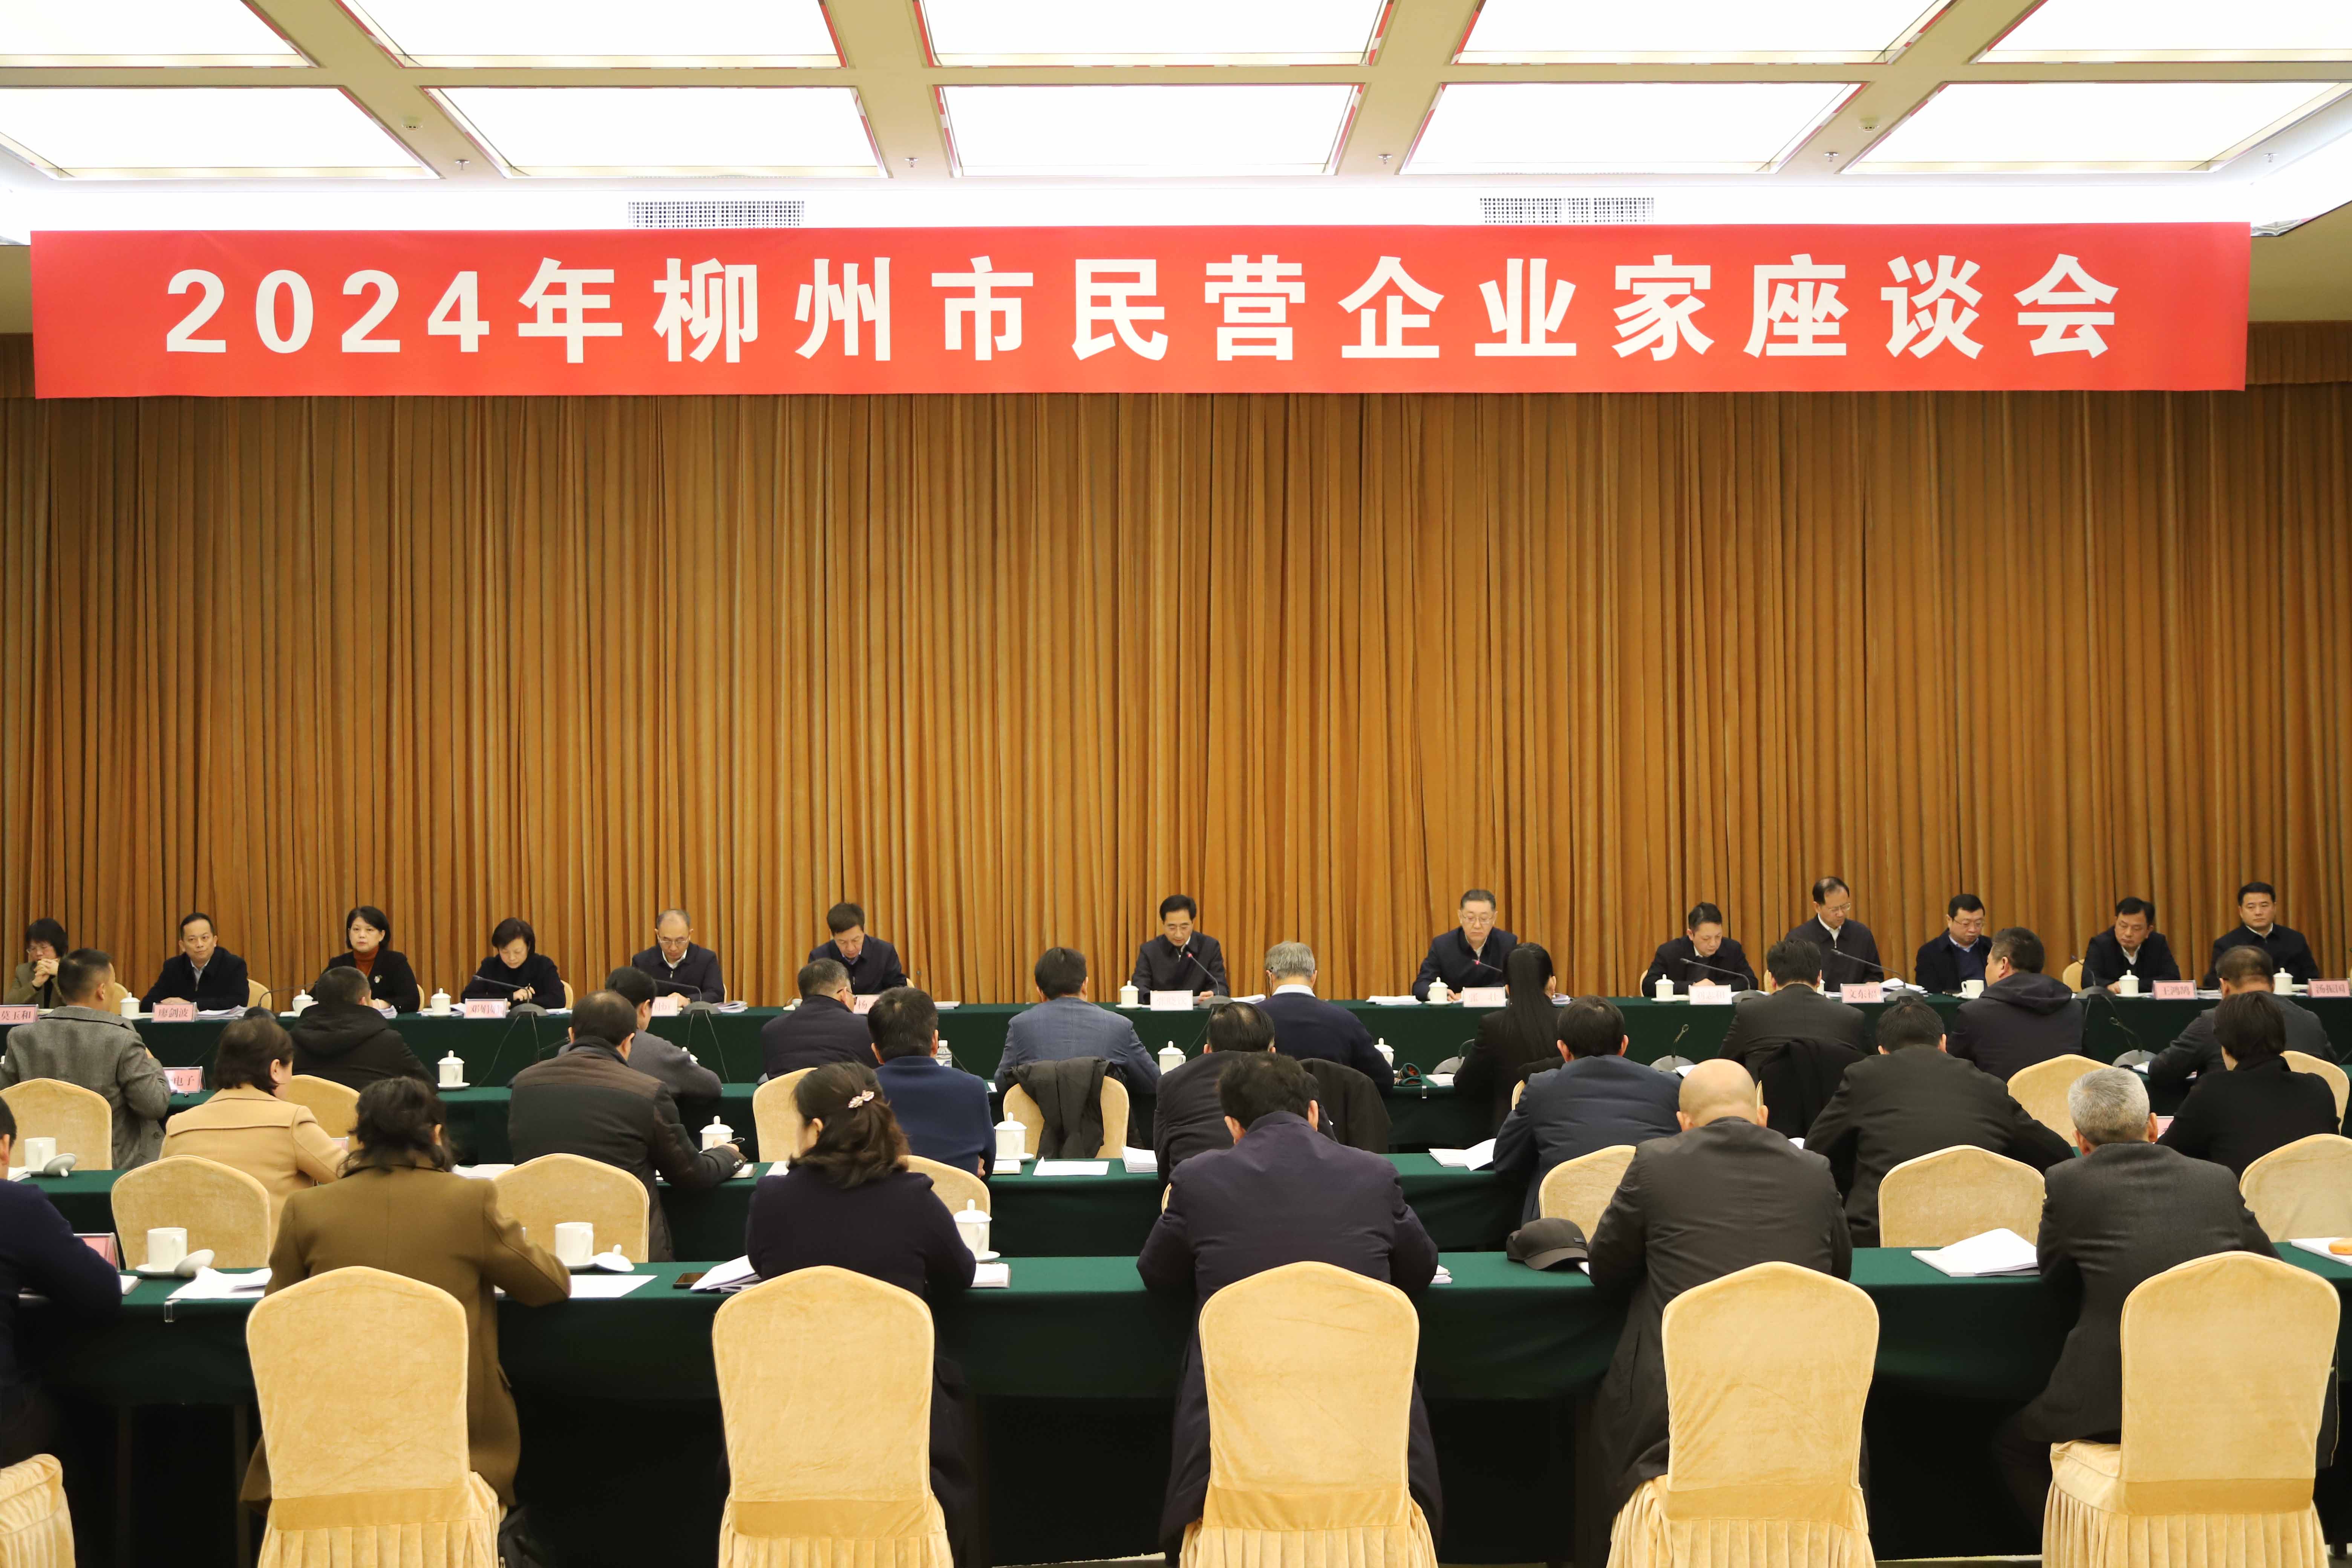 柳州市召开2024年民营企业家座谈会